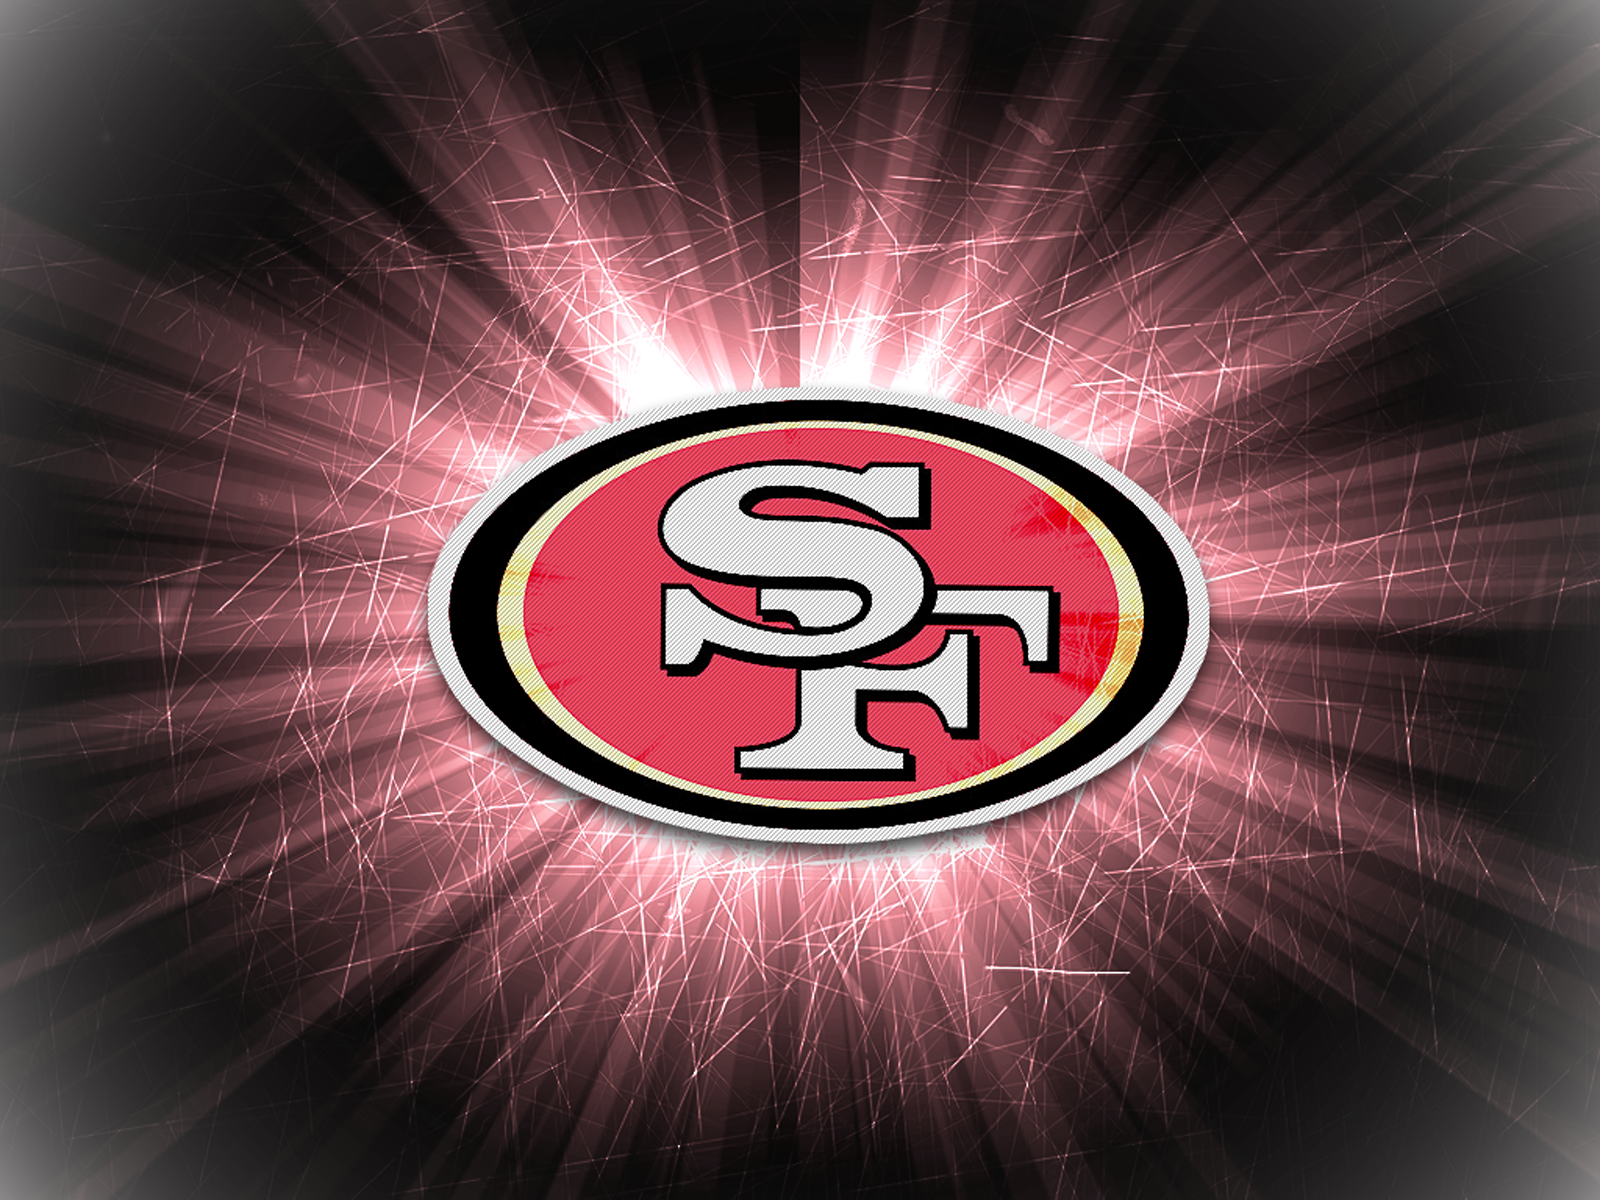  San Francisco 49ers desktop background San Francisco 49ers